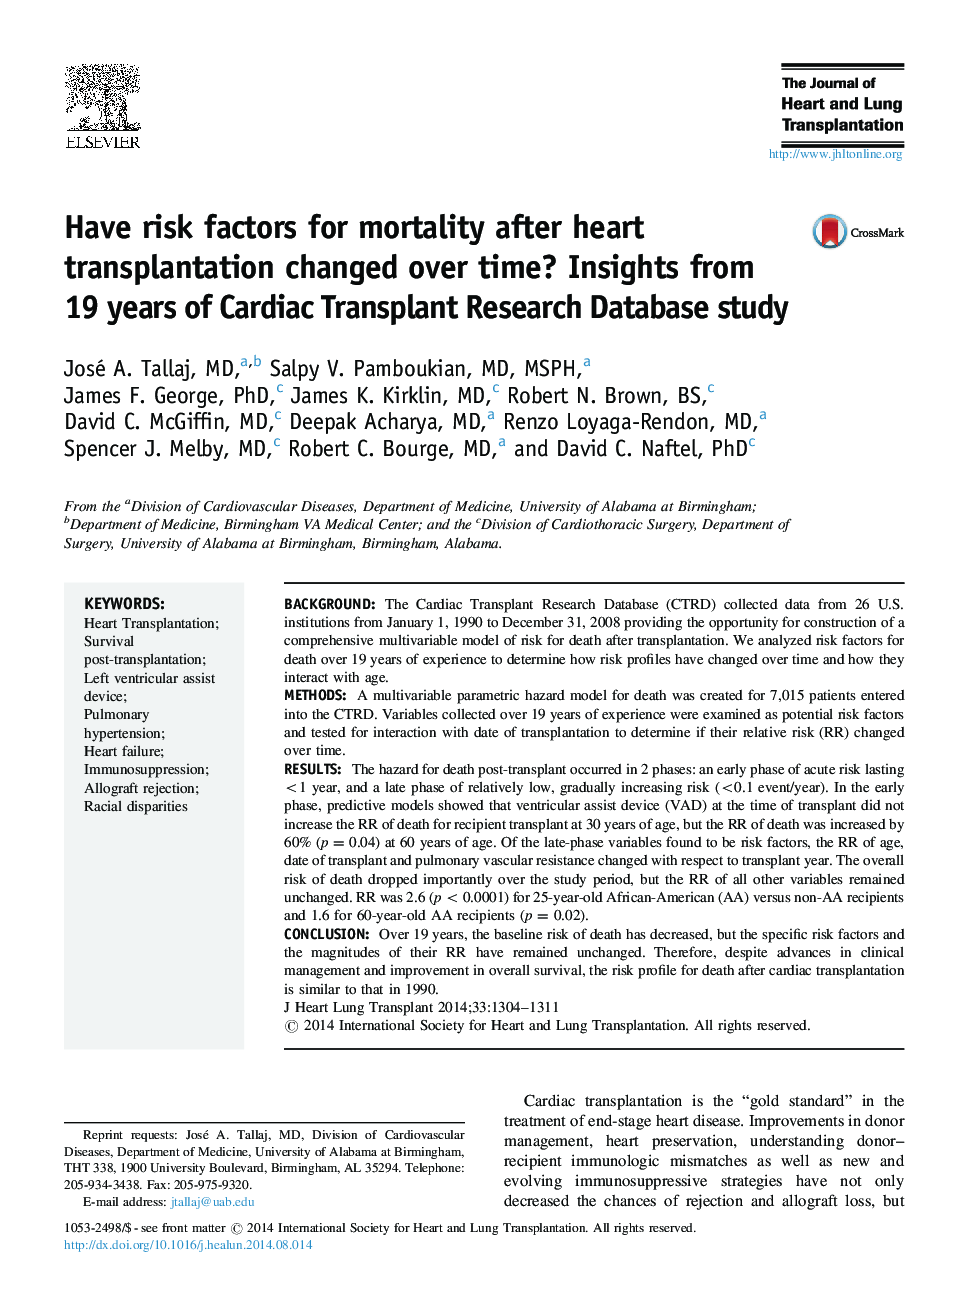 آیا عوامل خطر برای مرگ و میر پس از پیوند قلب در طول زمان تغییر کرده است؟ بینش از 19 سال تحقیق در مورد تحقیقات پیوند قلب 